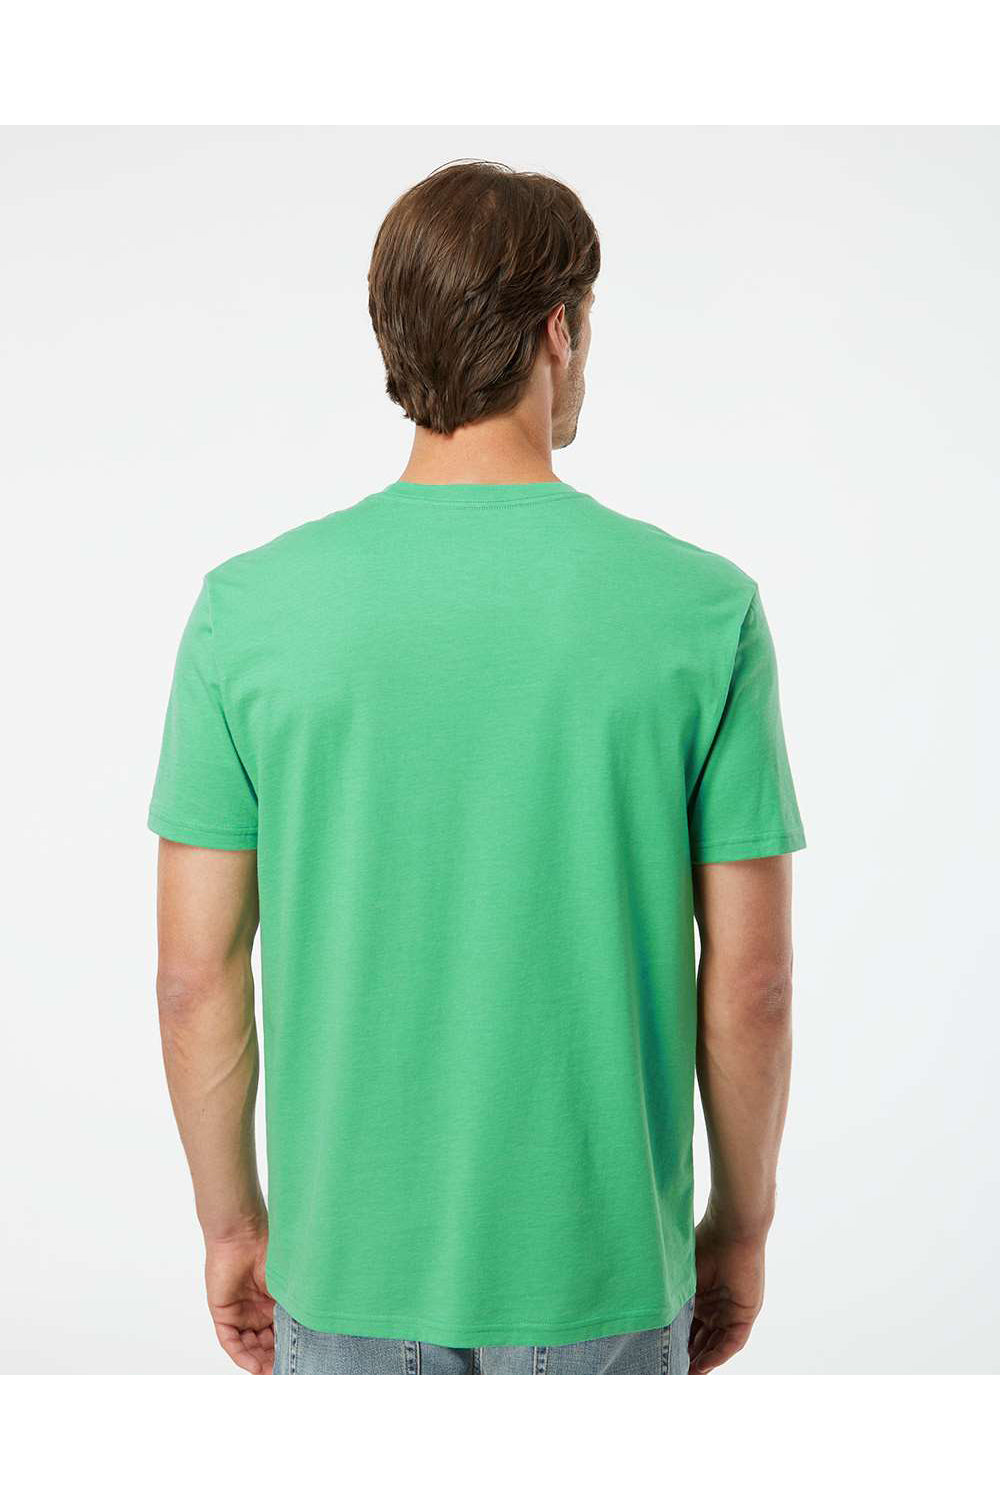 Kastlfel 2010 Mens RecycledSoft Short Sleve Crewneck T-Shirt Green Model Back